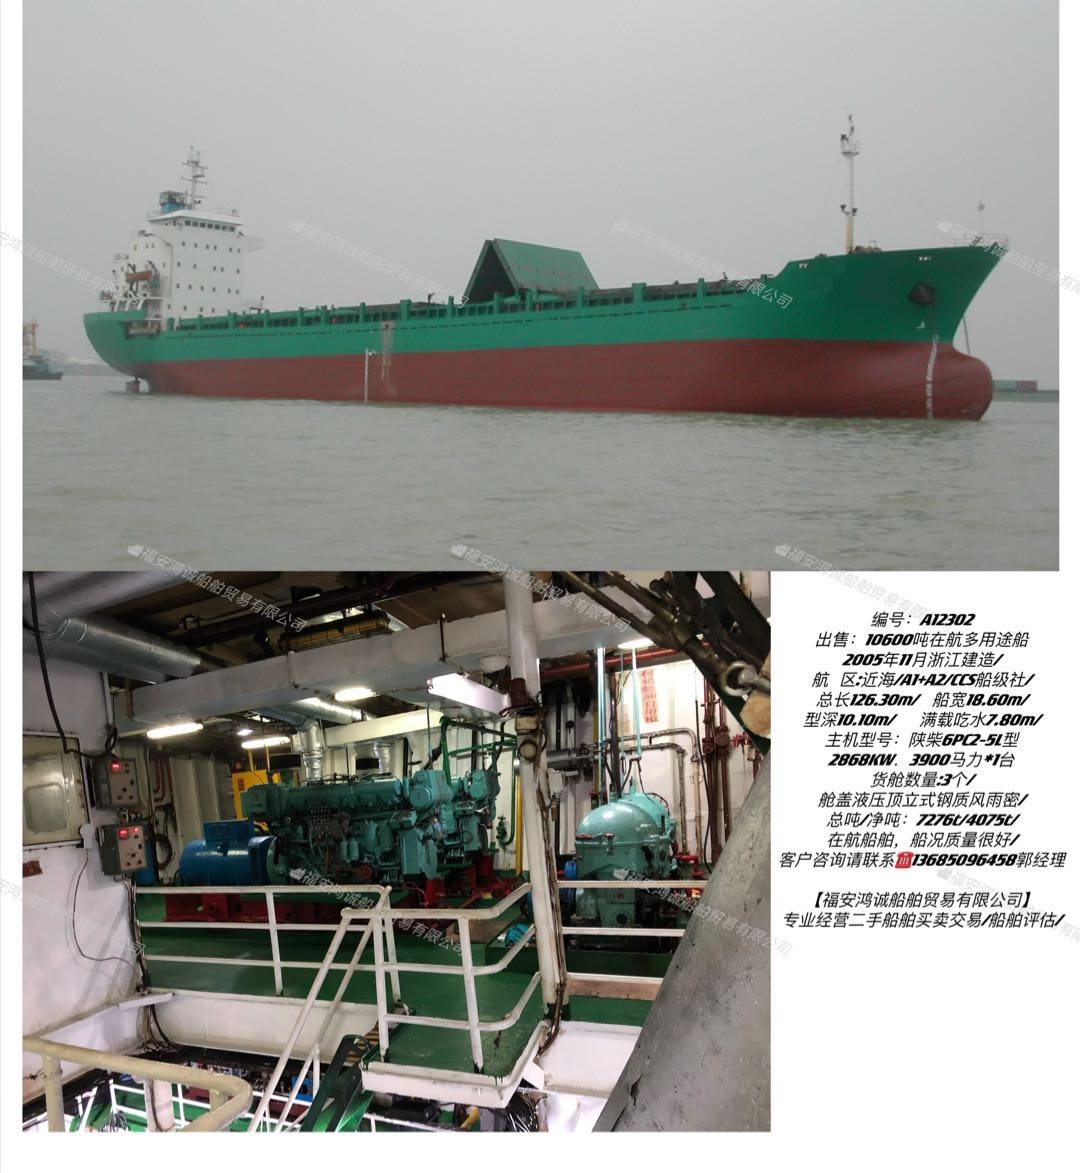 出售：10600吨在航多用途船 2005年11月浙江建造